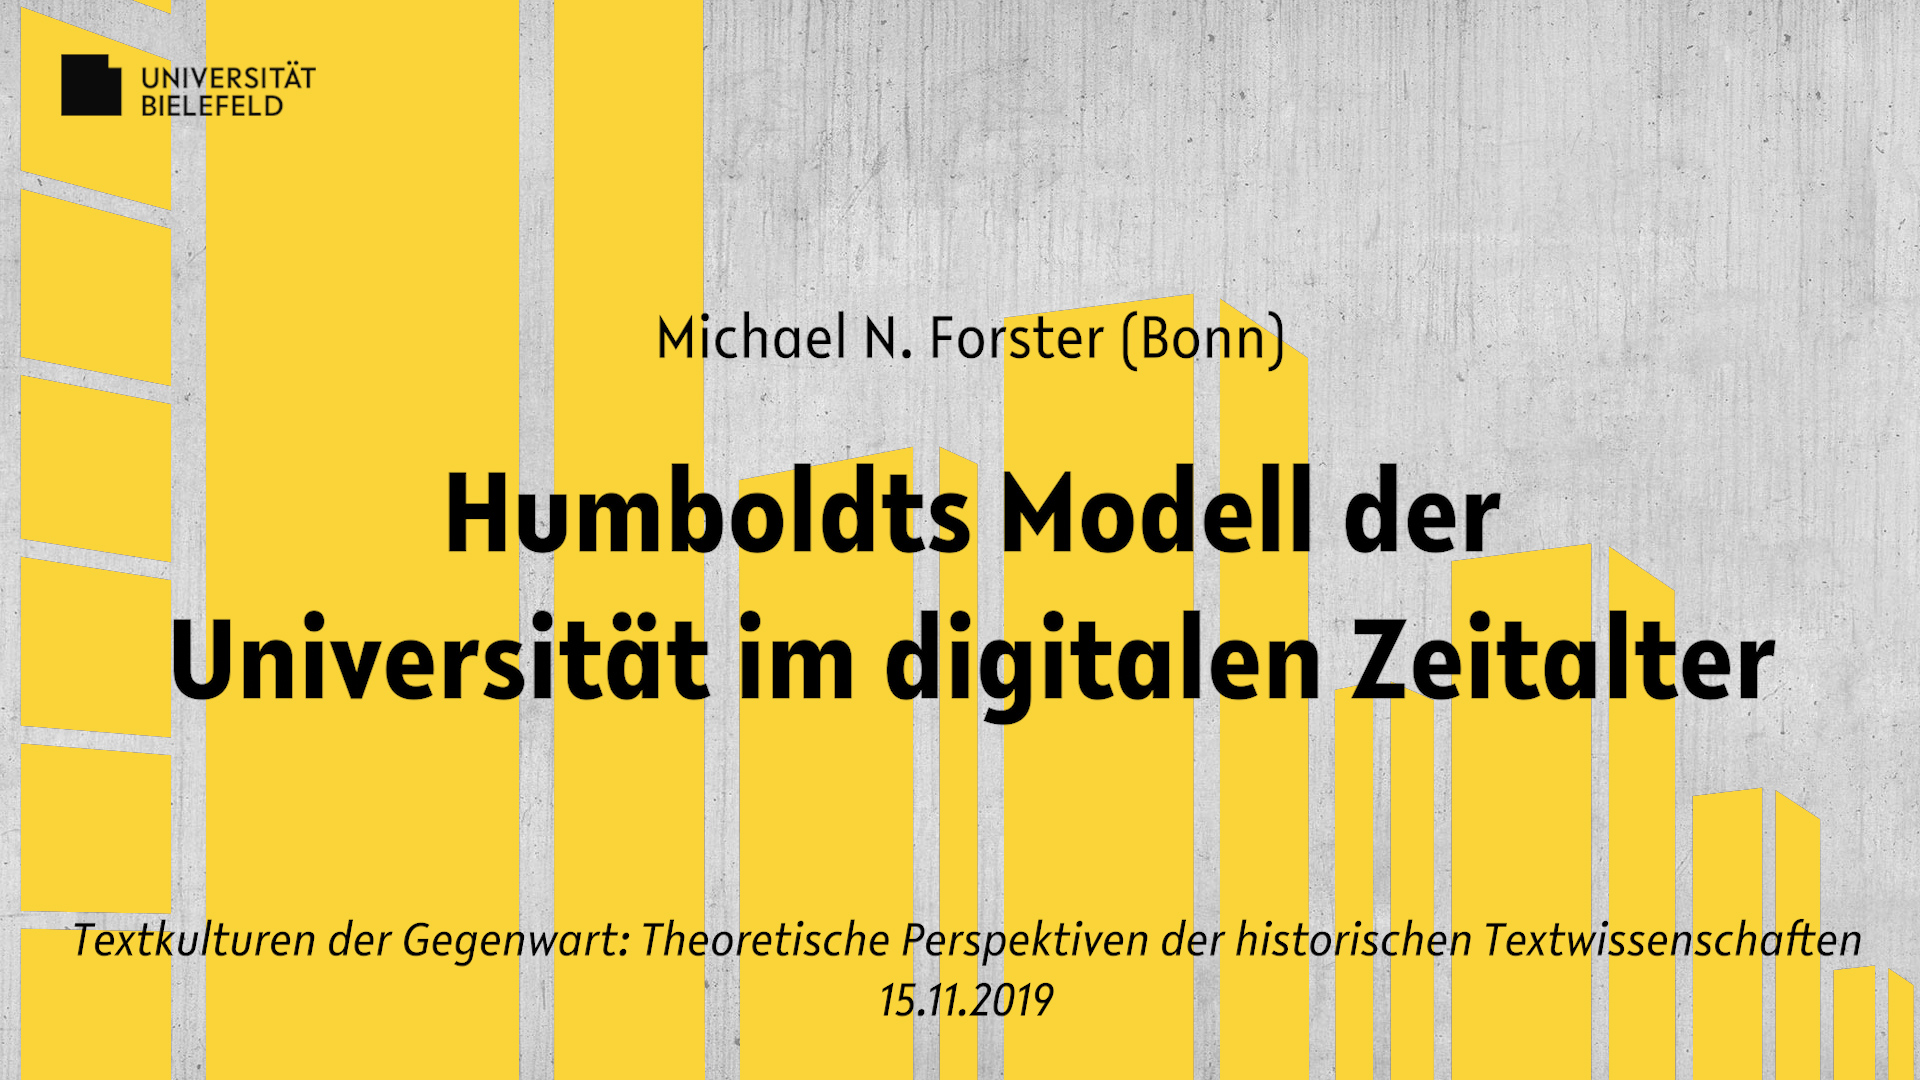 Humboldts Modell der Universität im digitalen Zeitalter